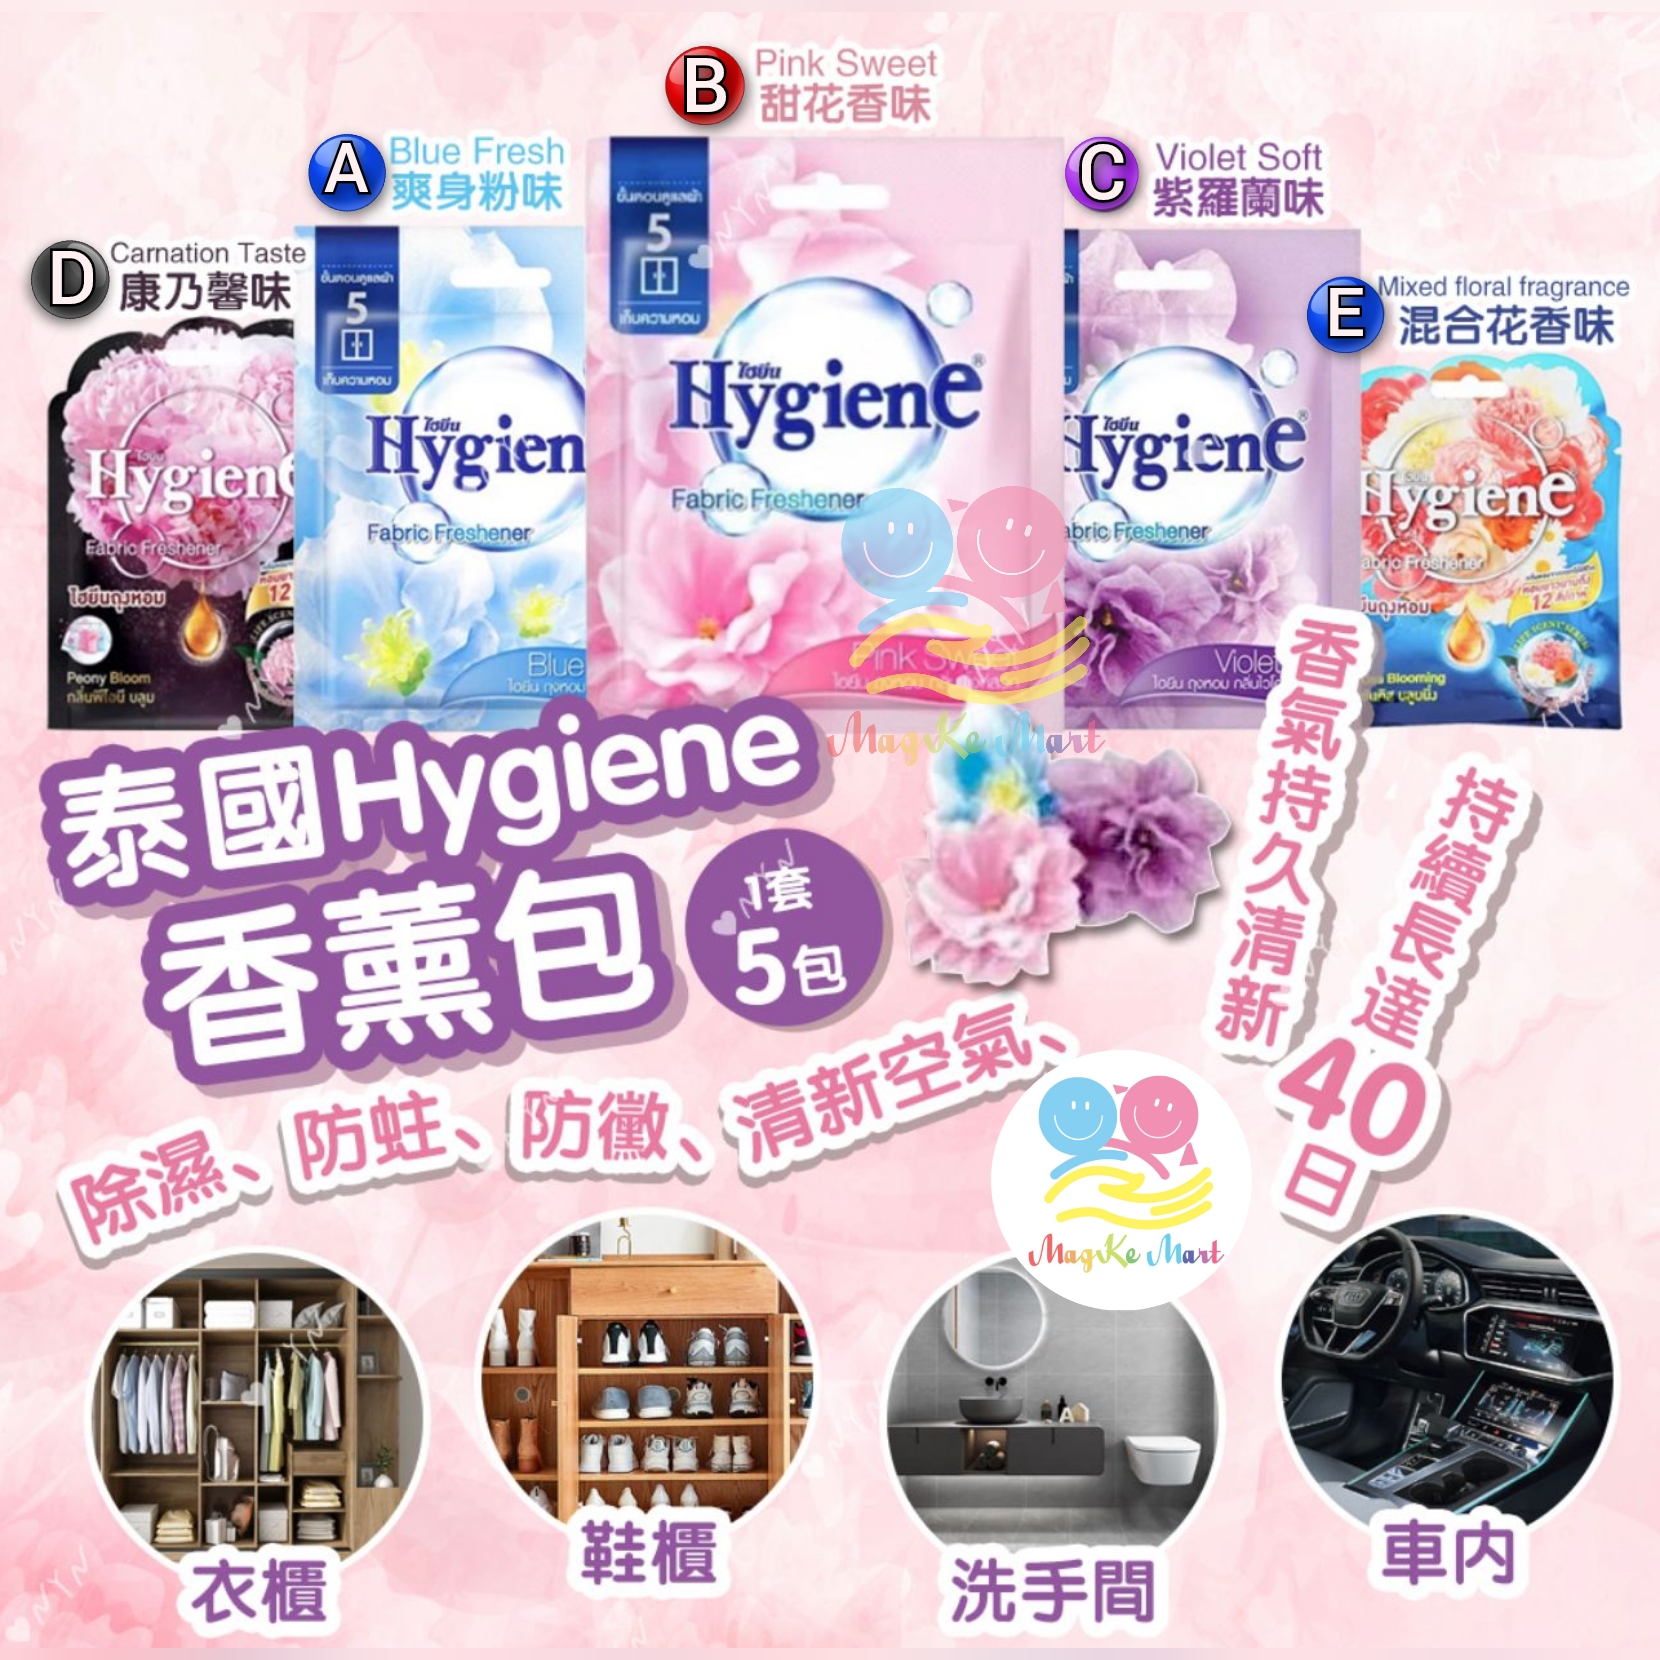 泰國 Hygiene 香薰包 8g (1套5包) (C) 紫色：Violet Soft 紫羅蘭味